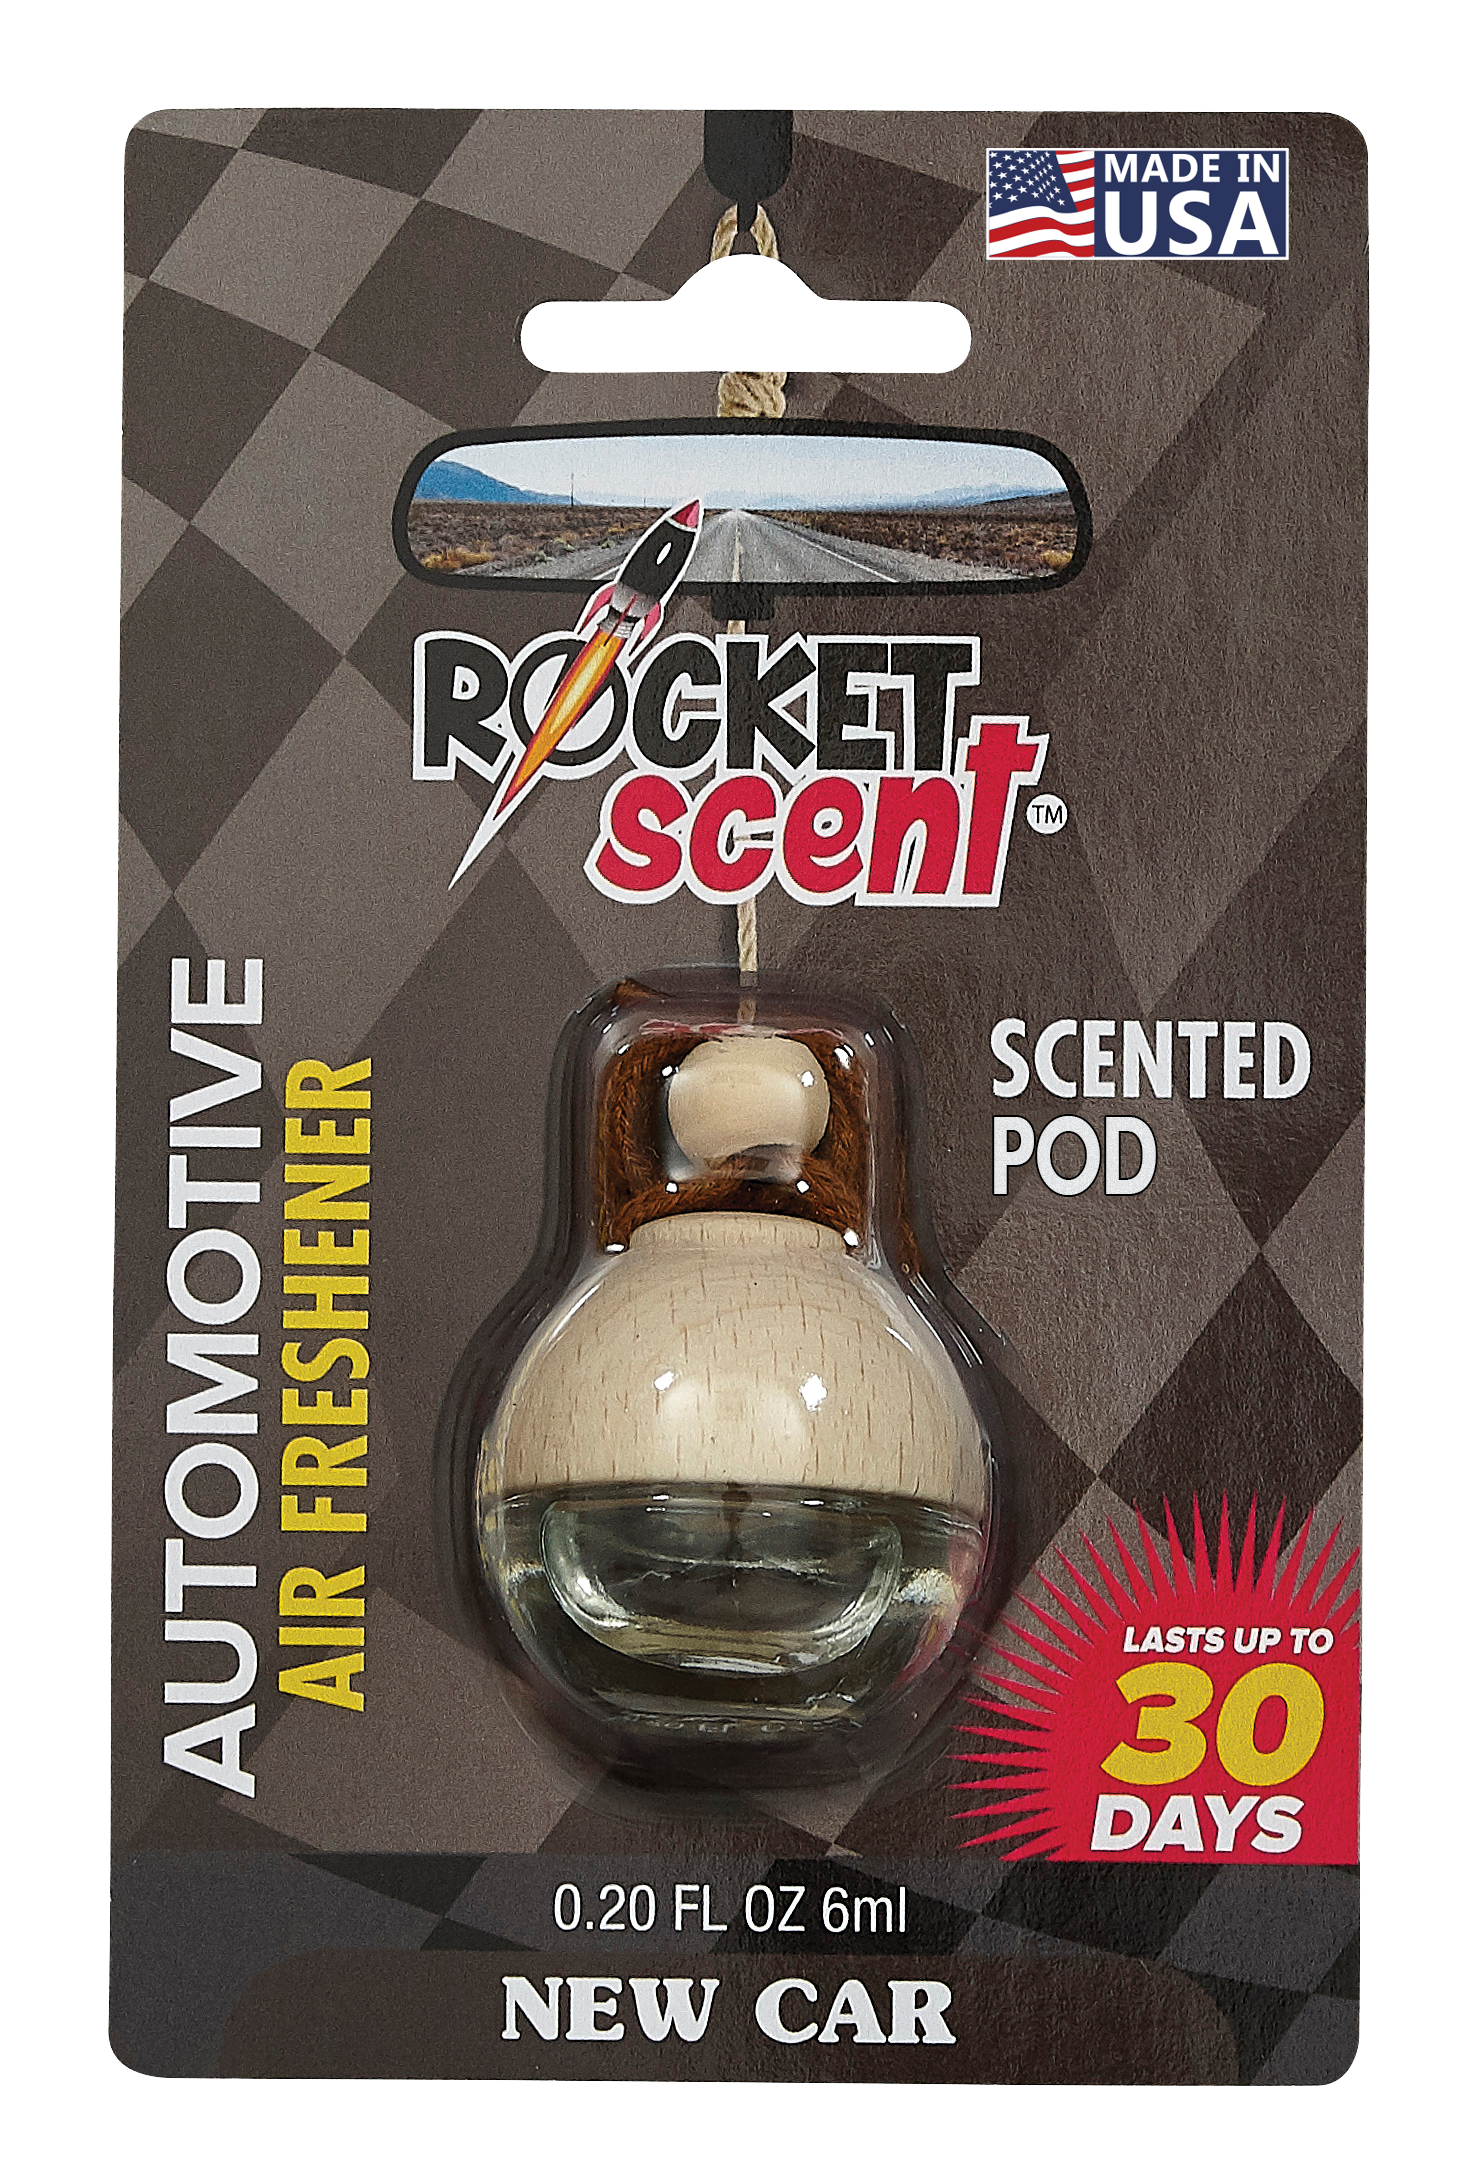 ROCKET SCENT :: Blister Packs :: New Car Scent Rocket Scent